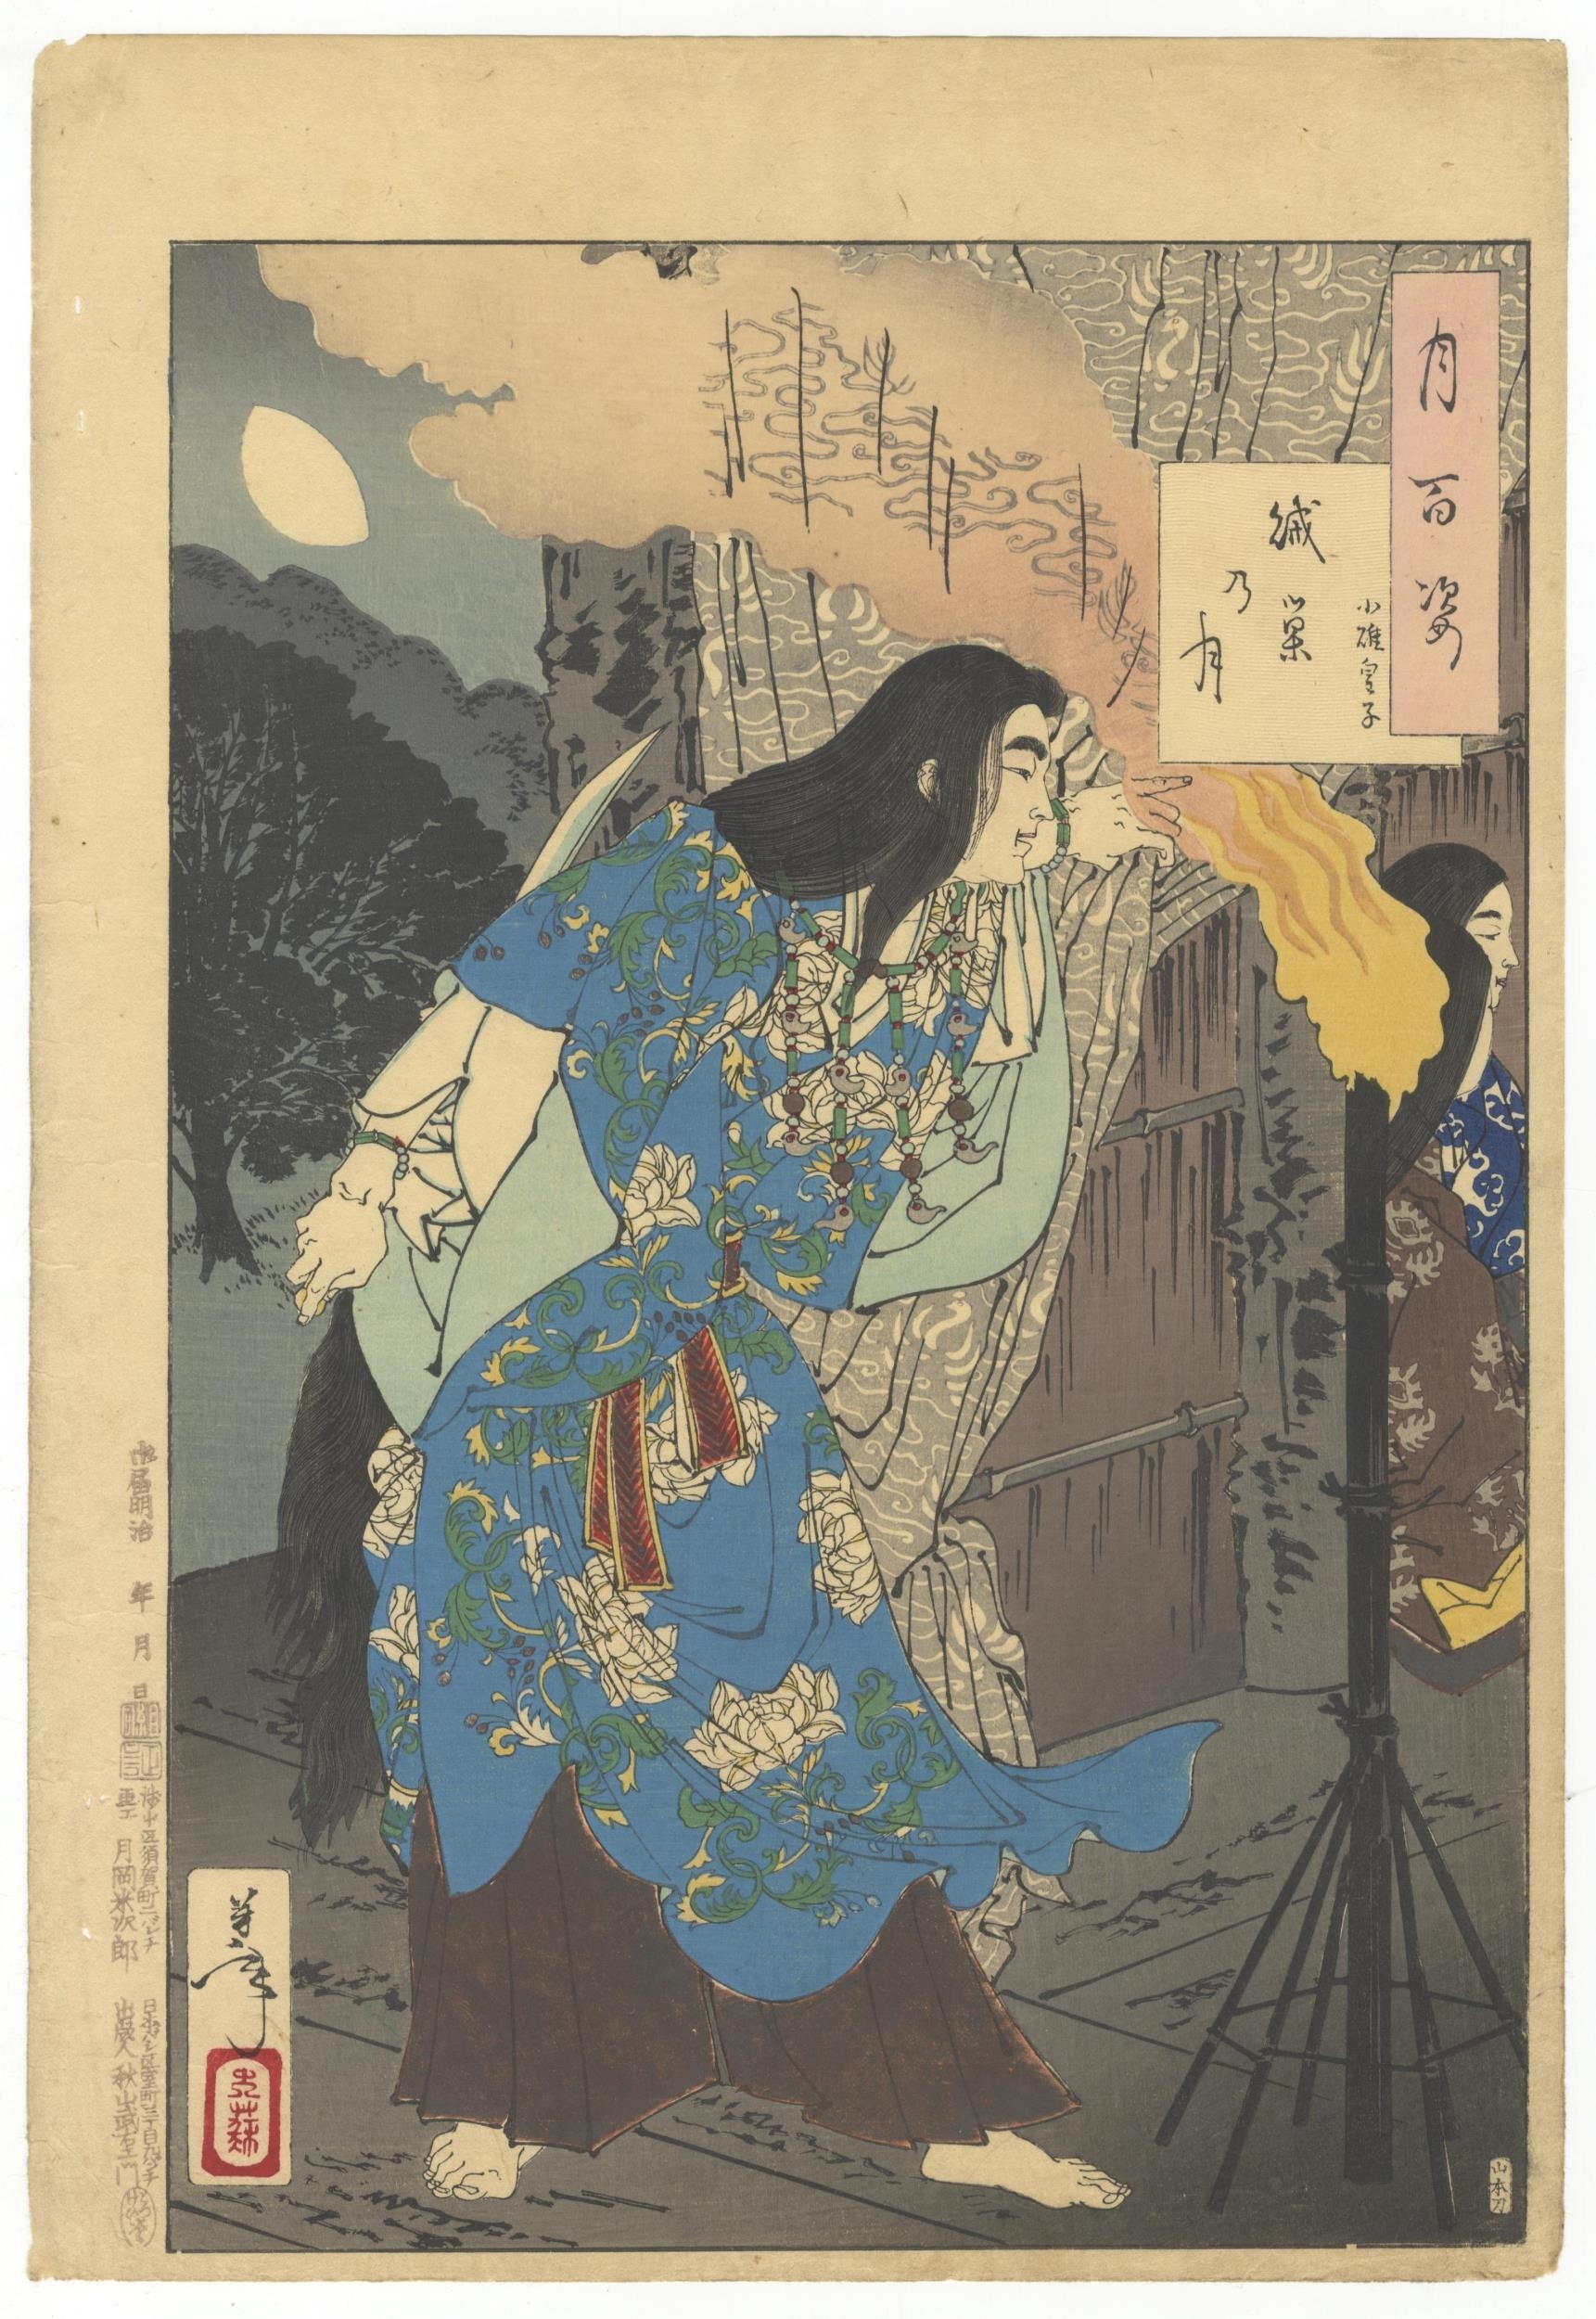 Moon of the Enemy's Lair by Tsukioka Yoshitoshi, 1885-1892